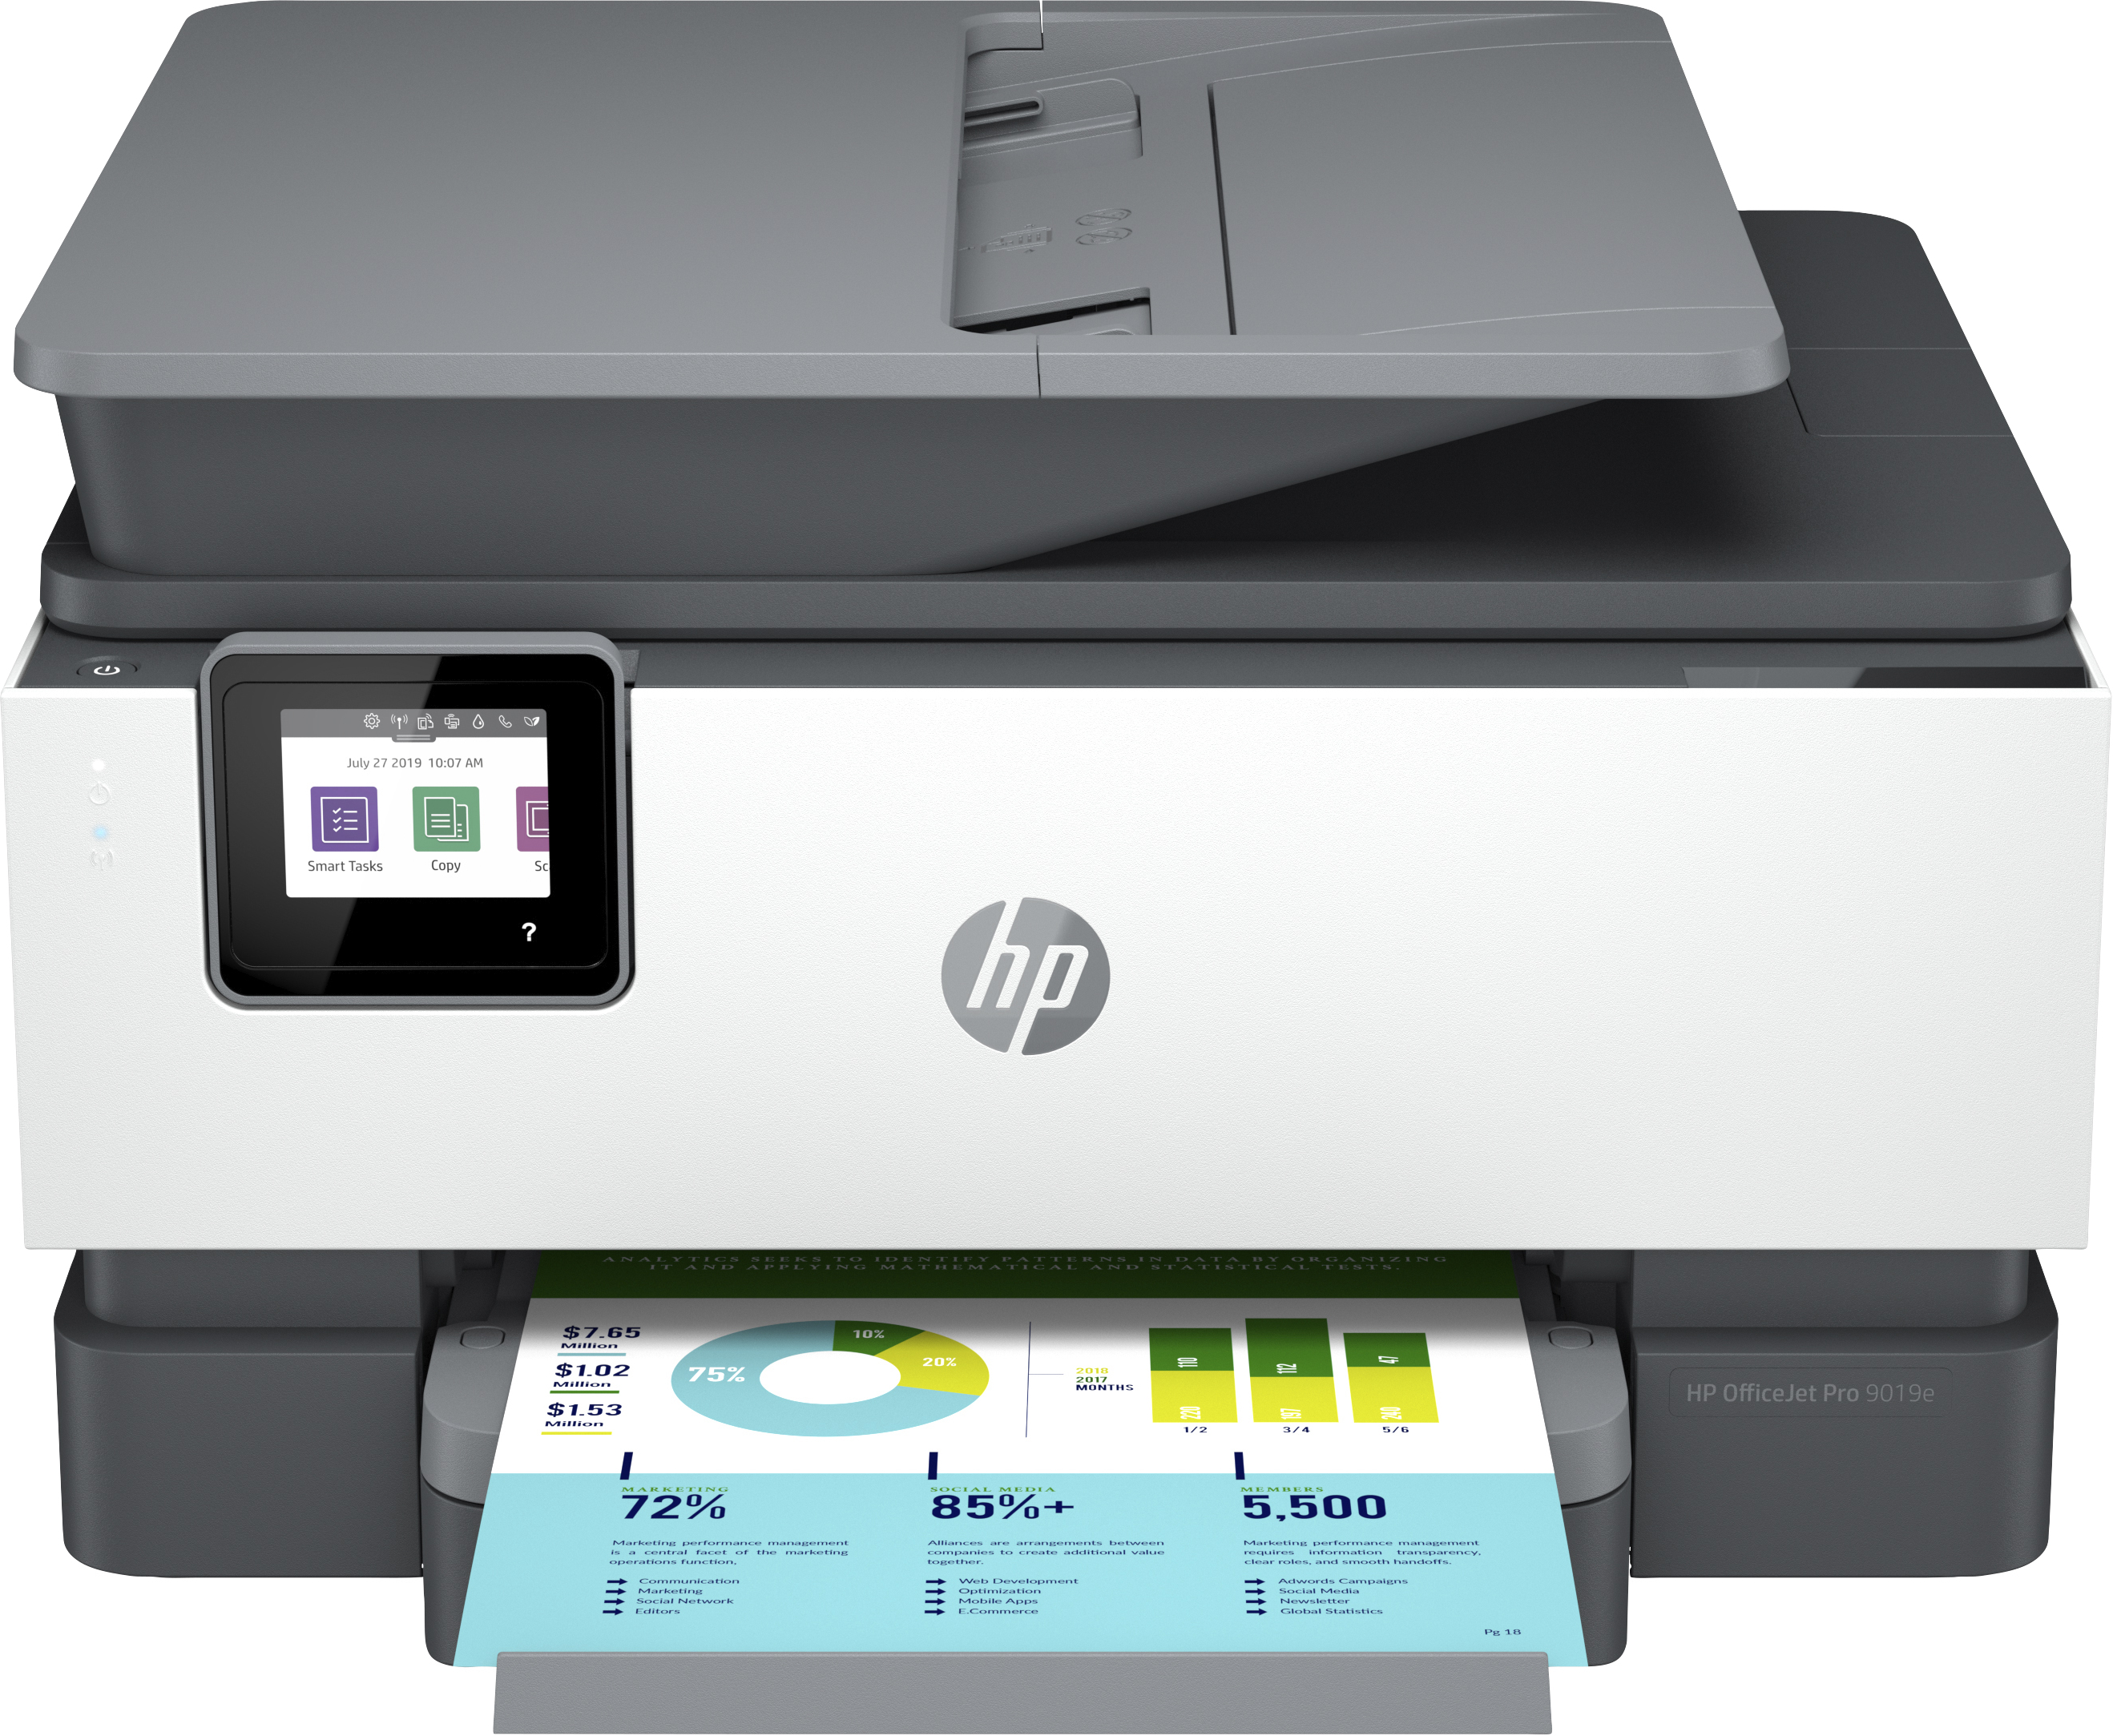 Image of HP OfficeJet Pro Stampante multifunzione HP 9019e, Colore, Stampante per Piccoli uffici, Stampa, copia, scansione, fax, HP+; Idoneo per HP Instant Ink; alimentatore automatico di documenti; Stampa fronte/retro